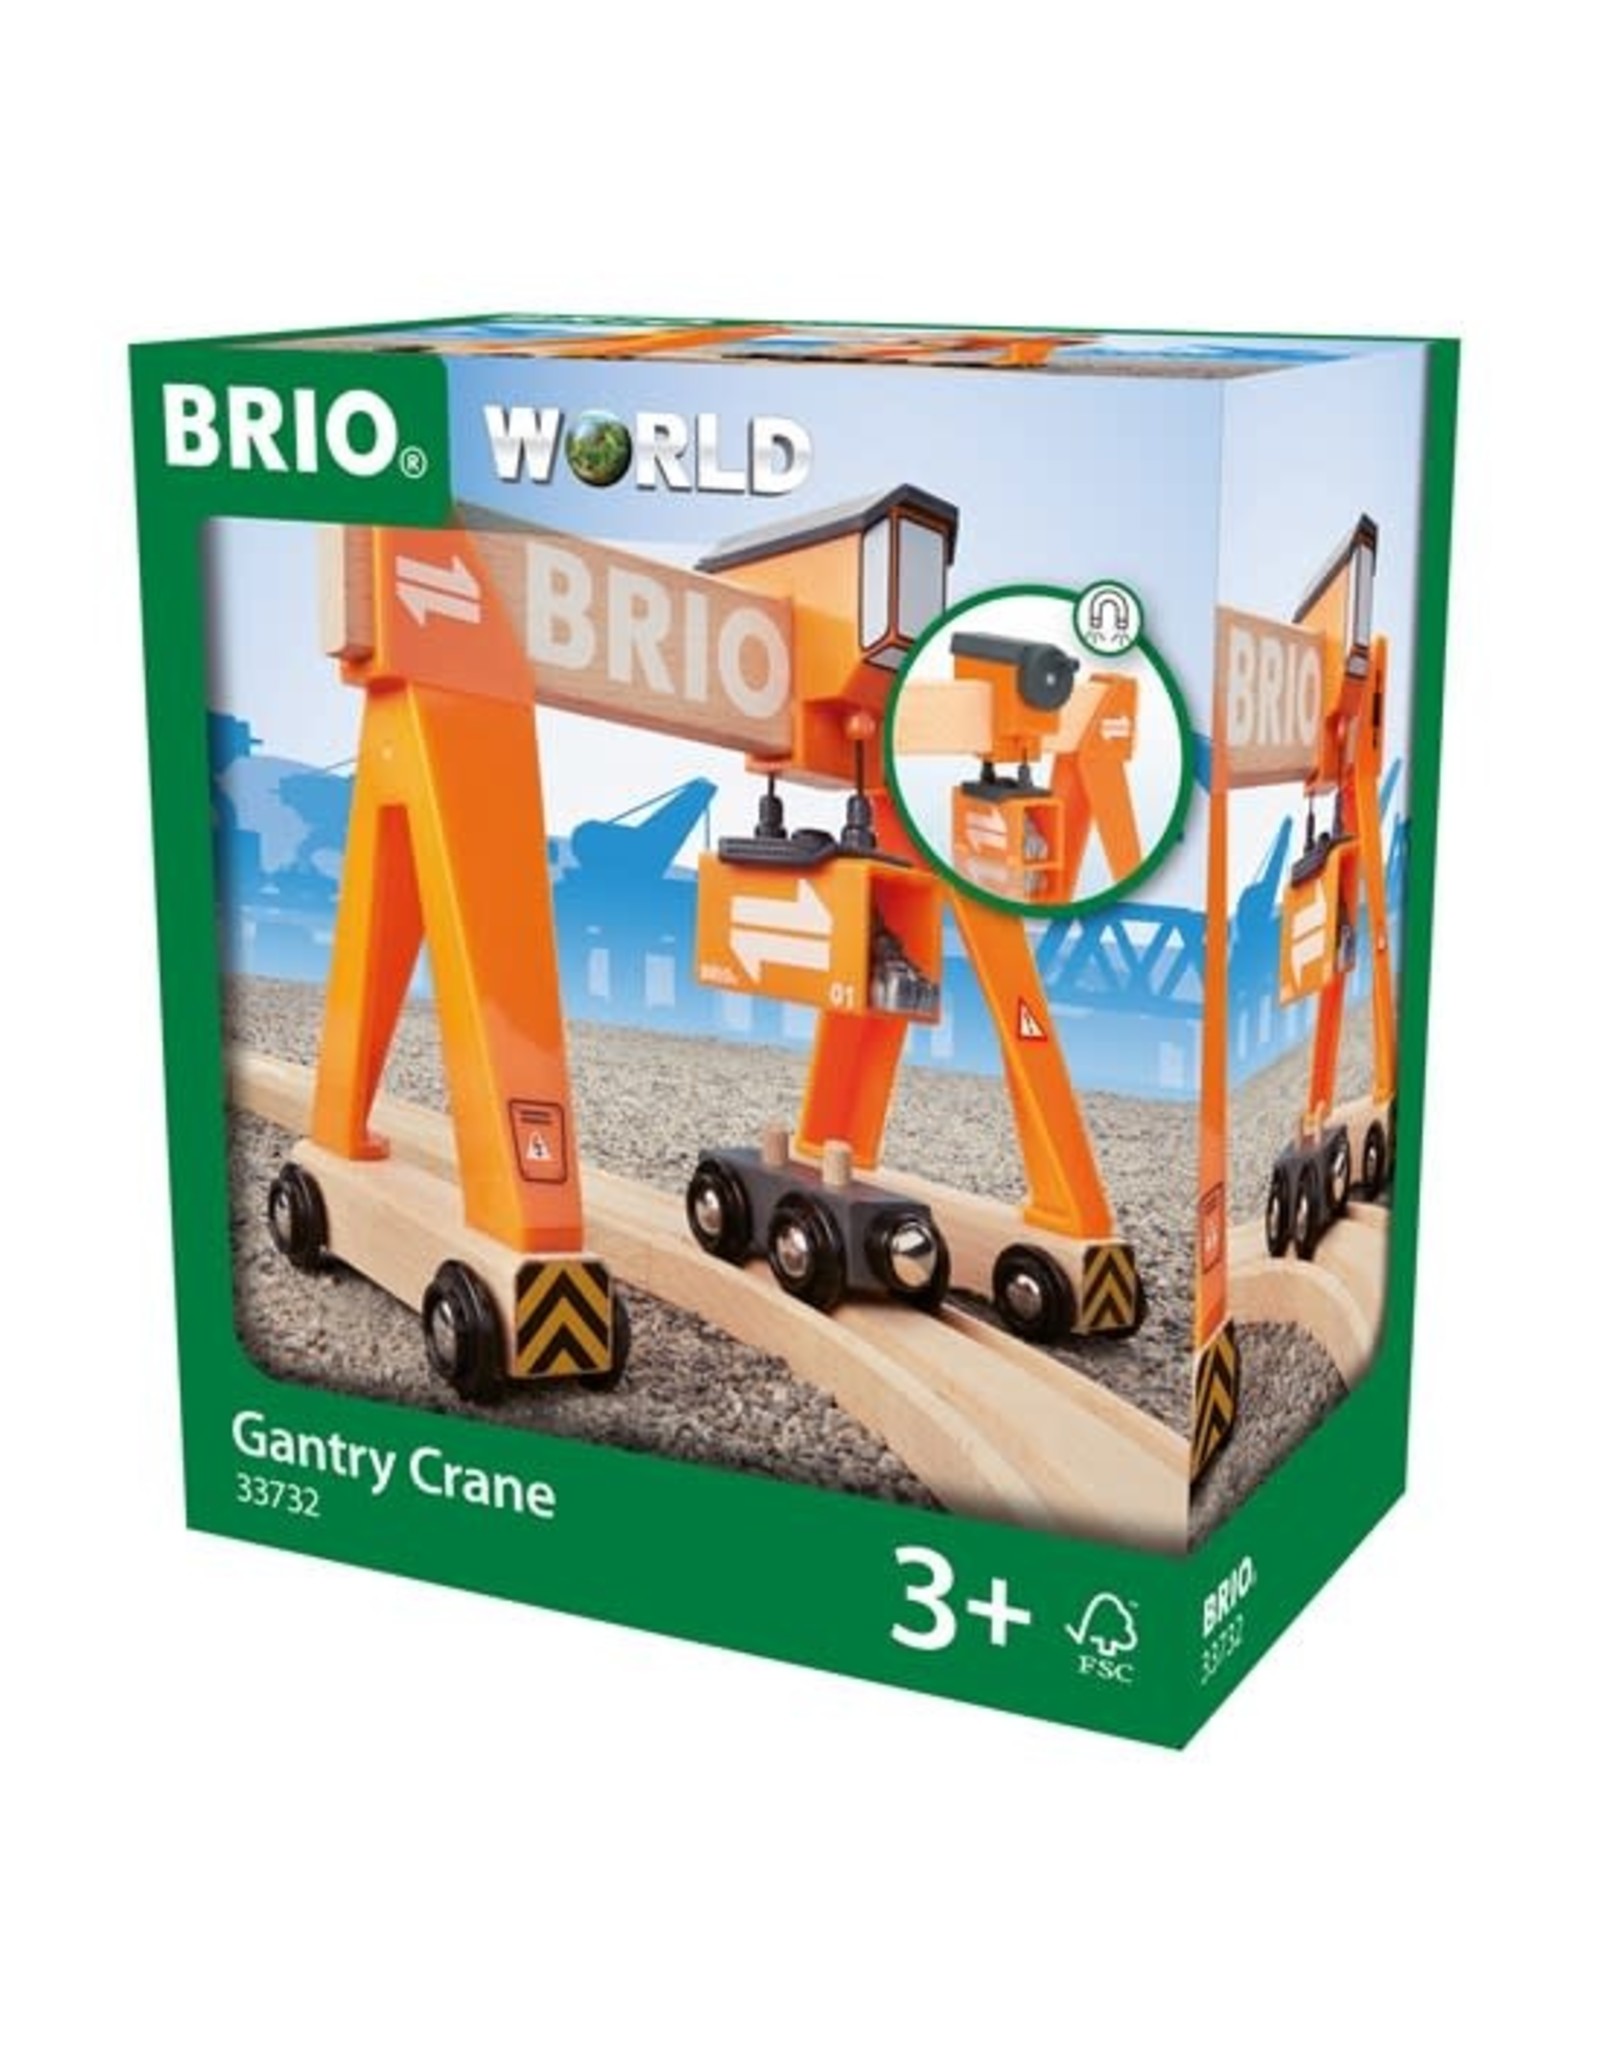 Brio Brio World 33732 Portaalkraan - Gantry Crane